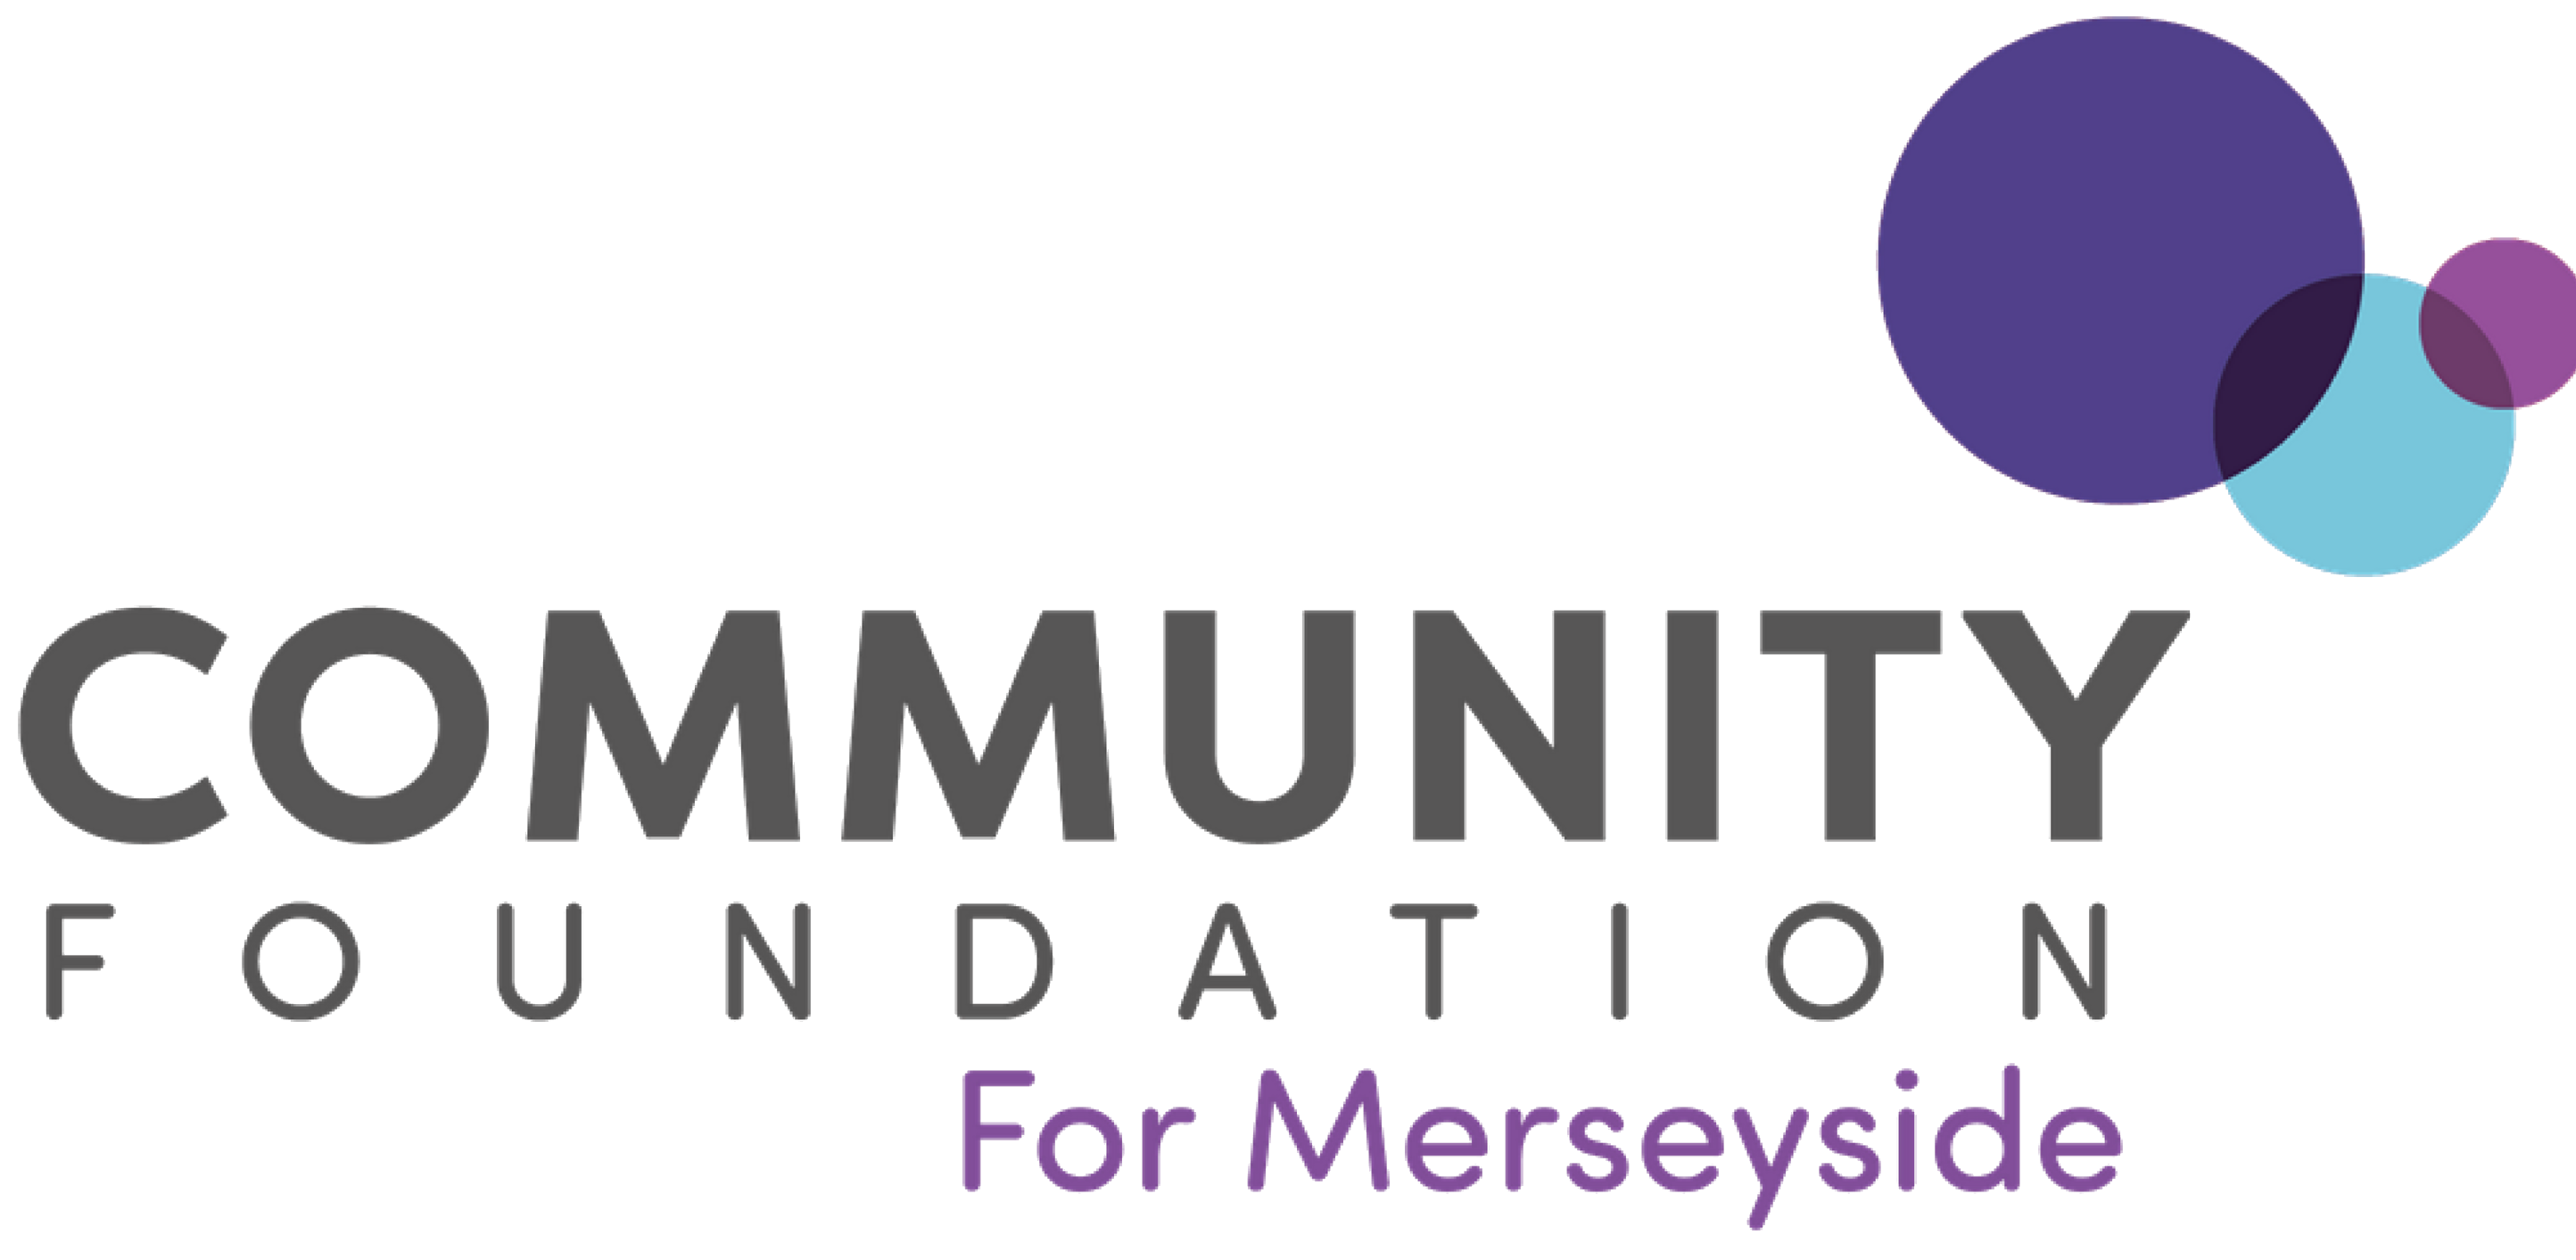 Community Foundation for Merseyside